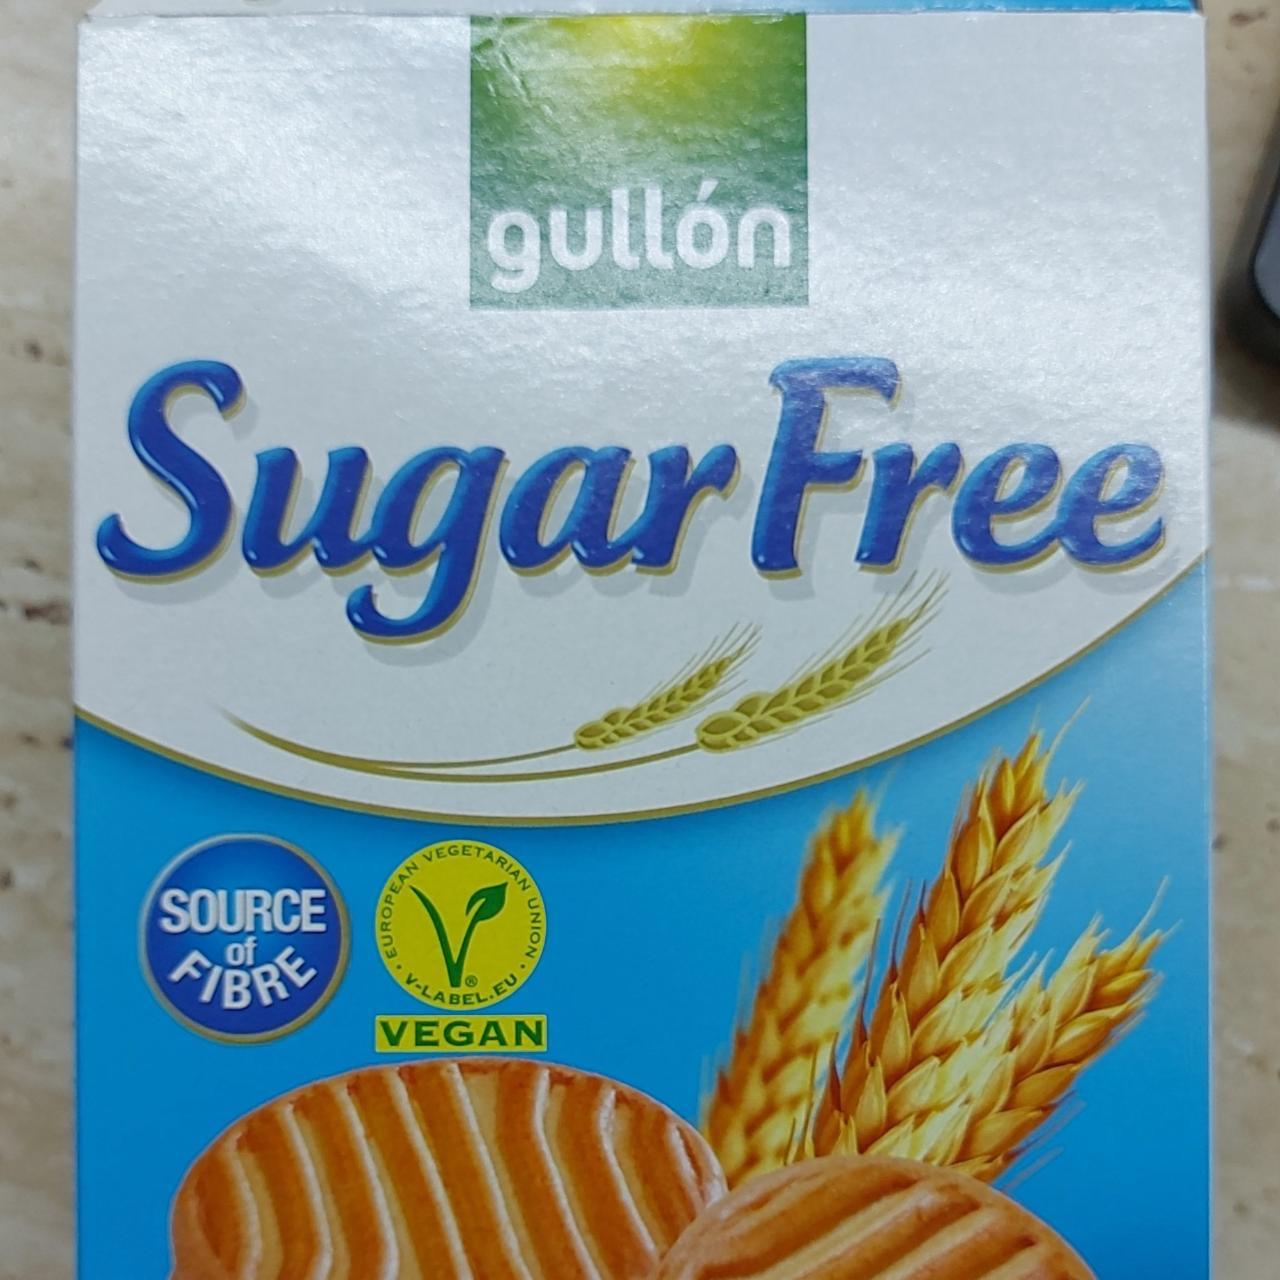 Képek - Shortbread Sugarfree biscuits Gullón